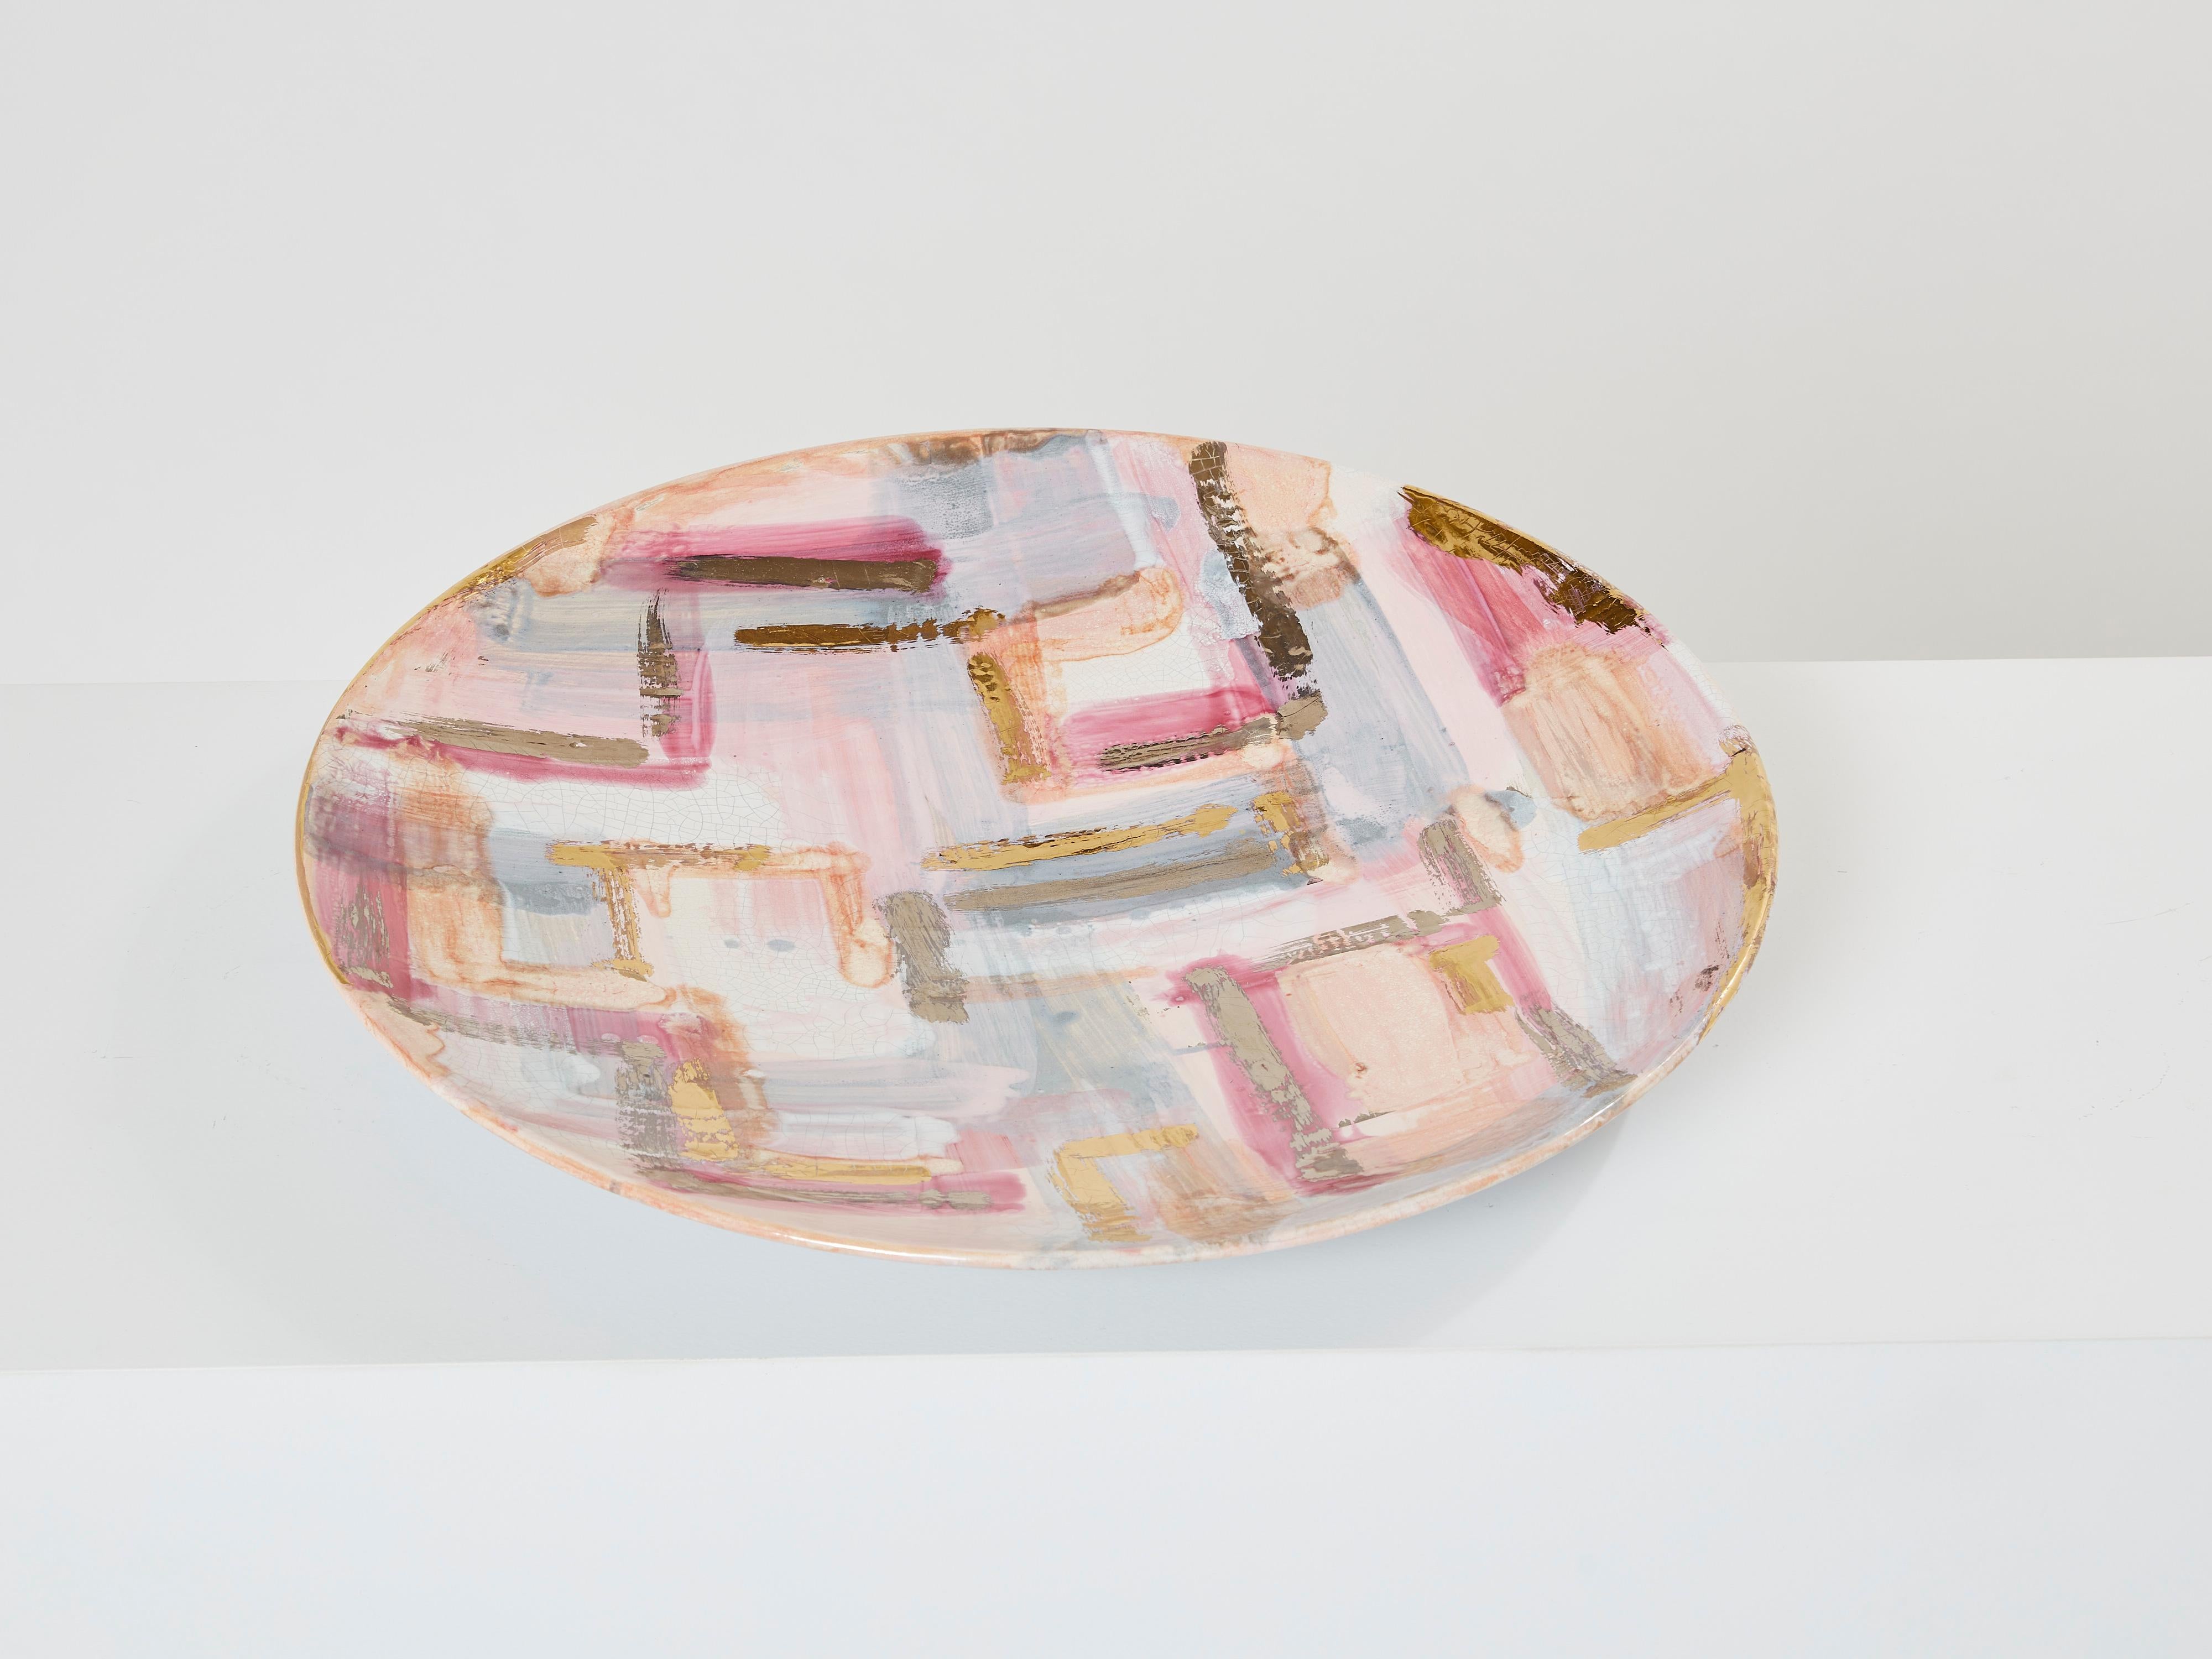 Dieser farbenfrohe, emaillierte runde Keramikteller wurde Anfang der 1990er Jahre von Les Héritiers in Frankreich entworfen und hergestellt. Dieser große Teller hat auffällige Pastellfarben, mit vergoldeten Details und Craquelé-Glasur rundherum.  Er